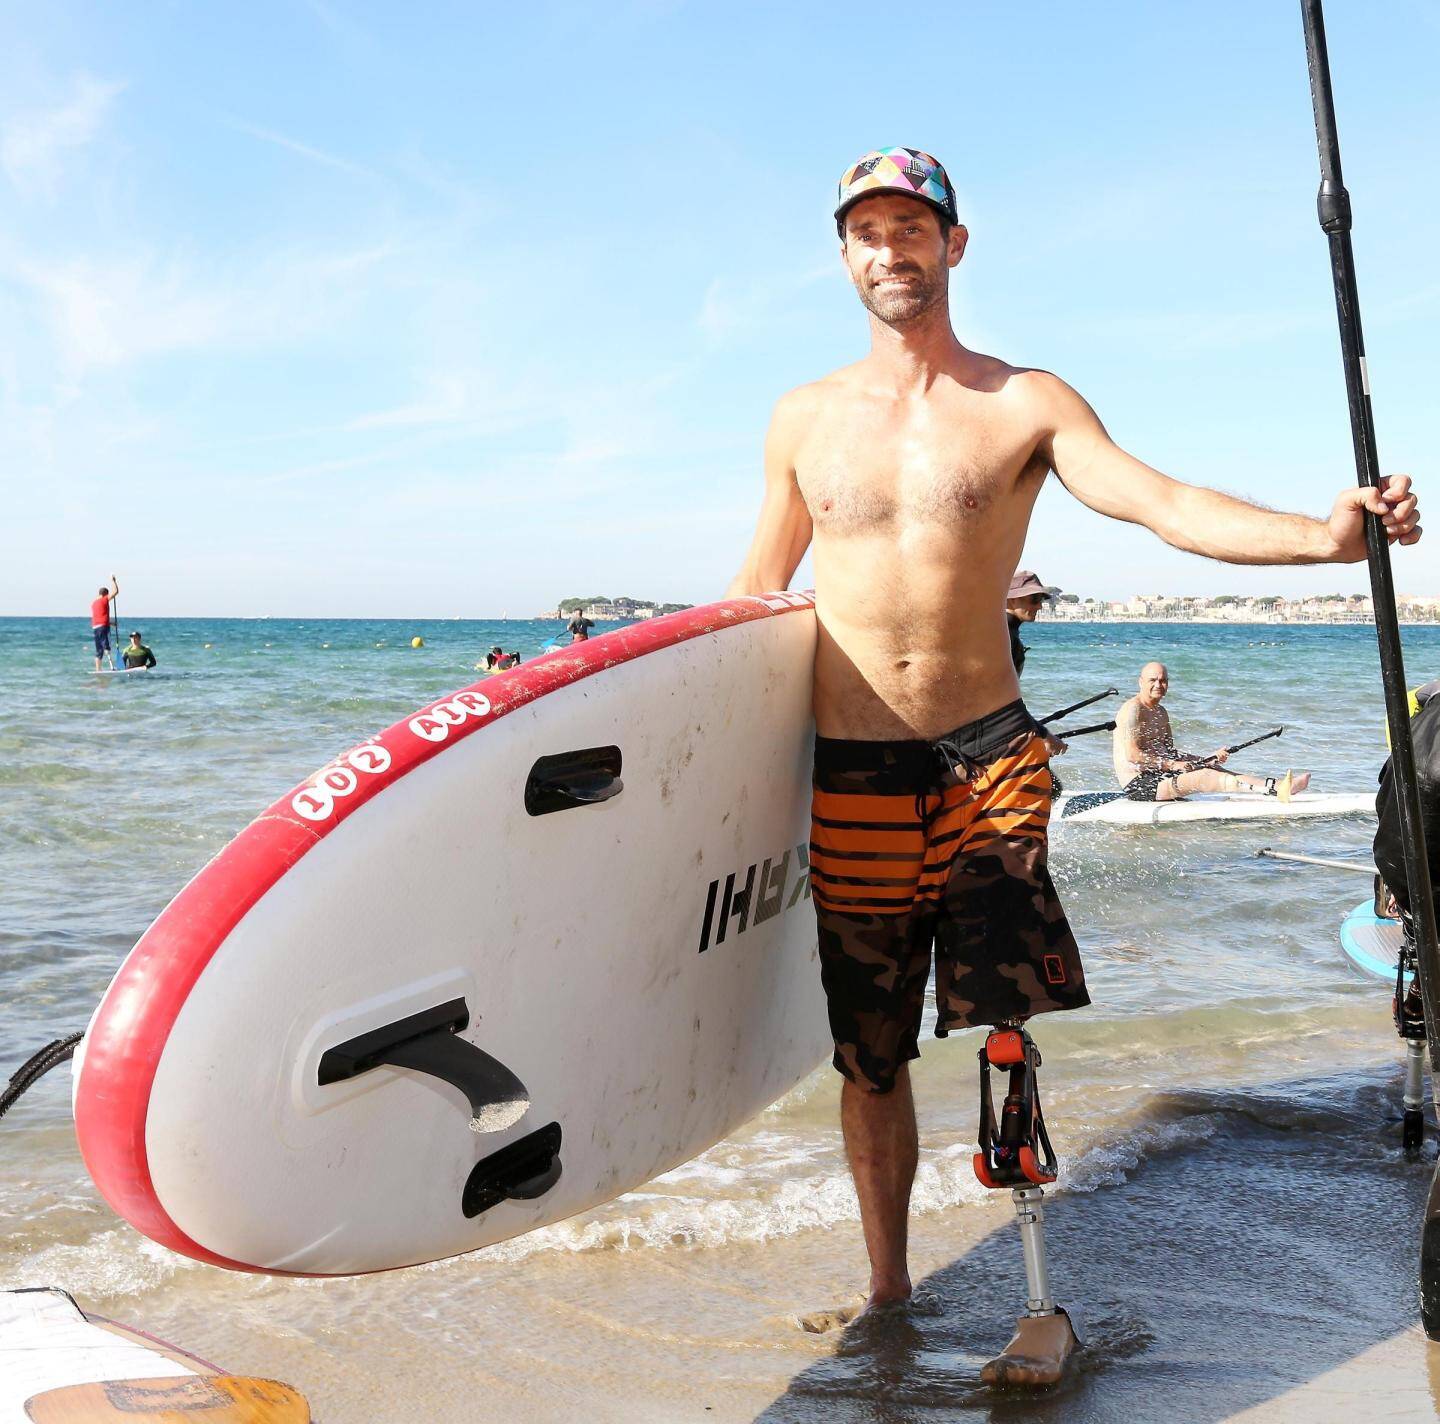 e champion de France handisurf Eric Dargent a fondé l’association Surfeurs d’argent, pour notamment faire avancer la recherche en matière de prothèses.